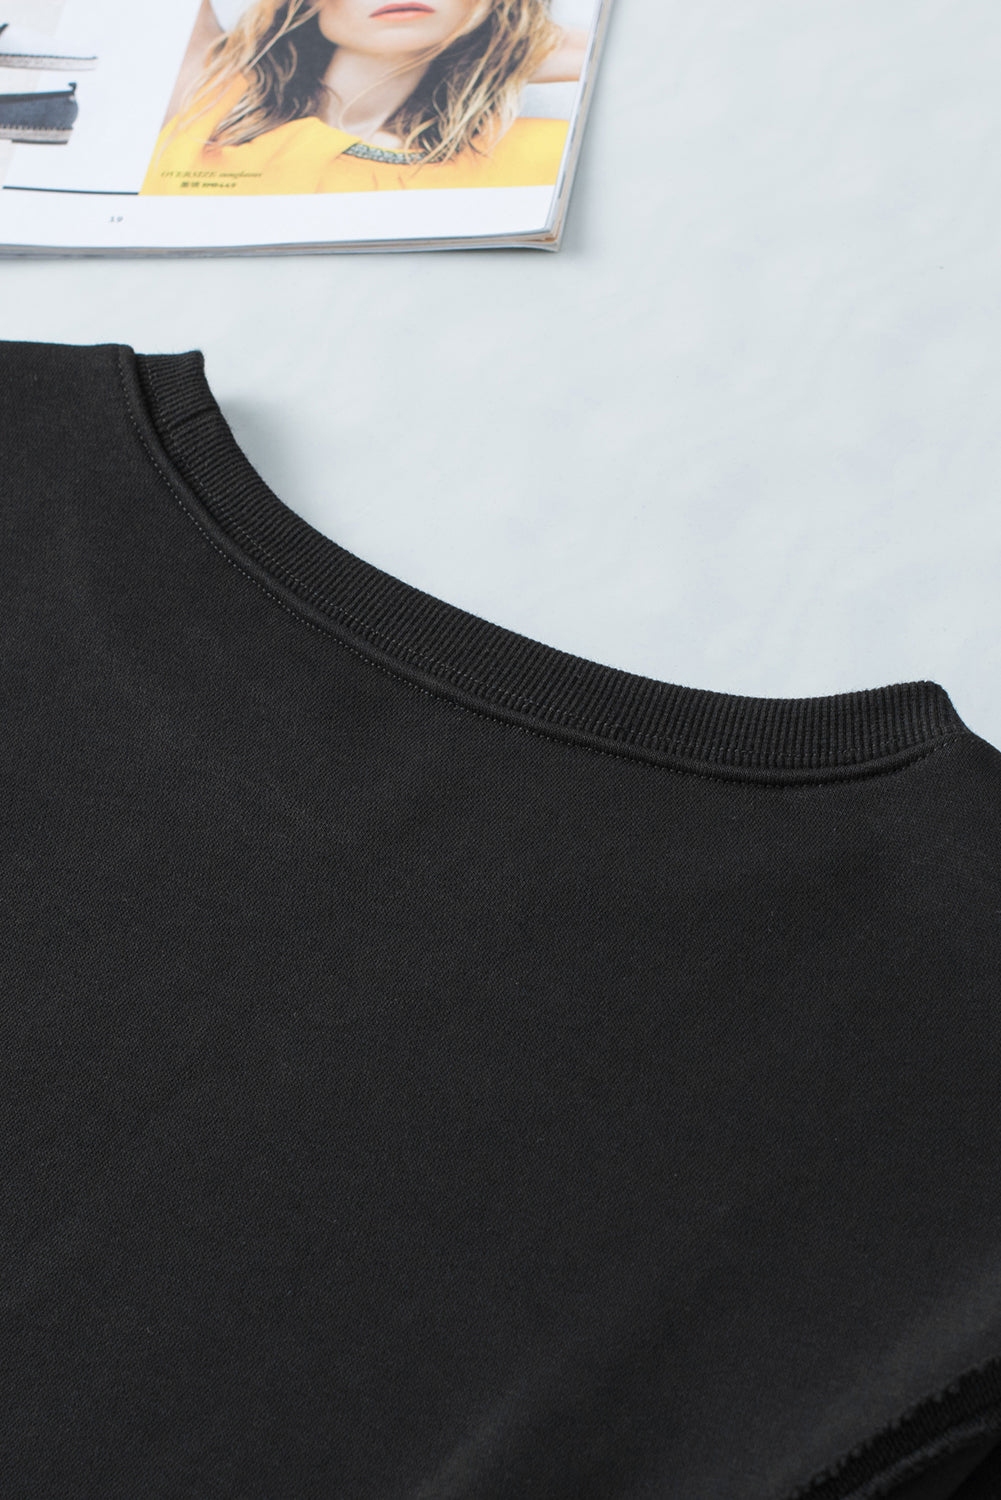 Sweat-shirt noir à coutures apparentes, épaules tombantes, fente, ourlet haut et bas